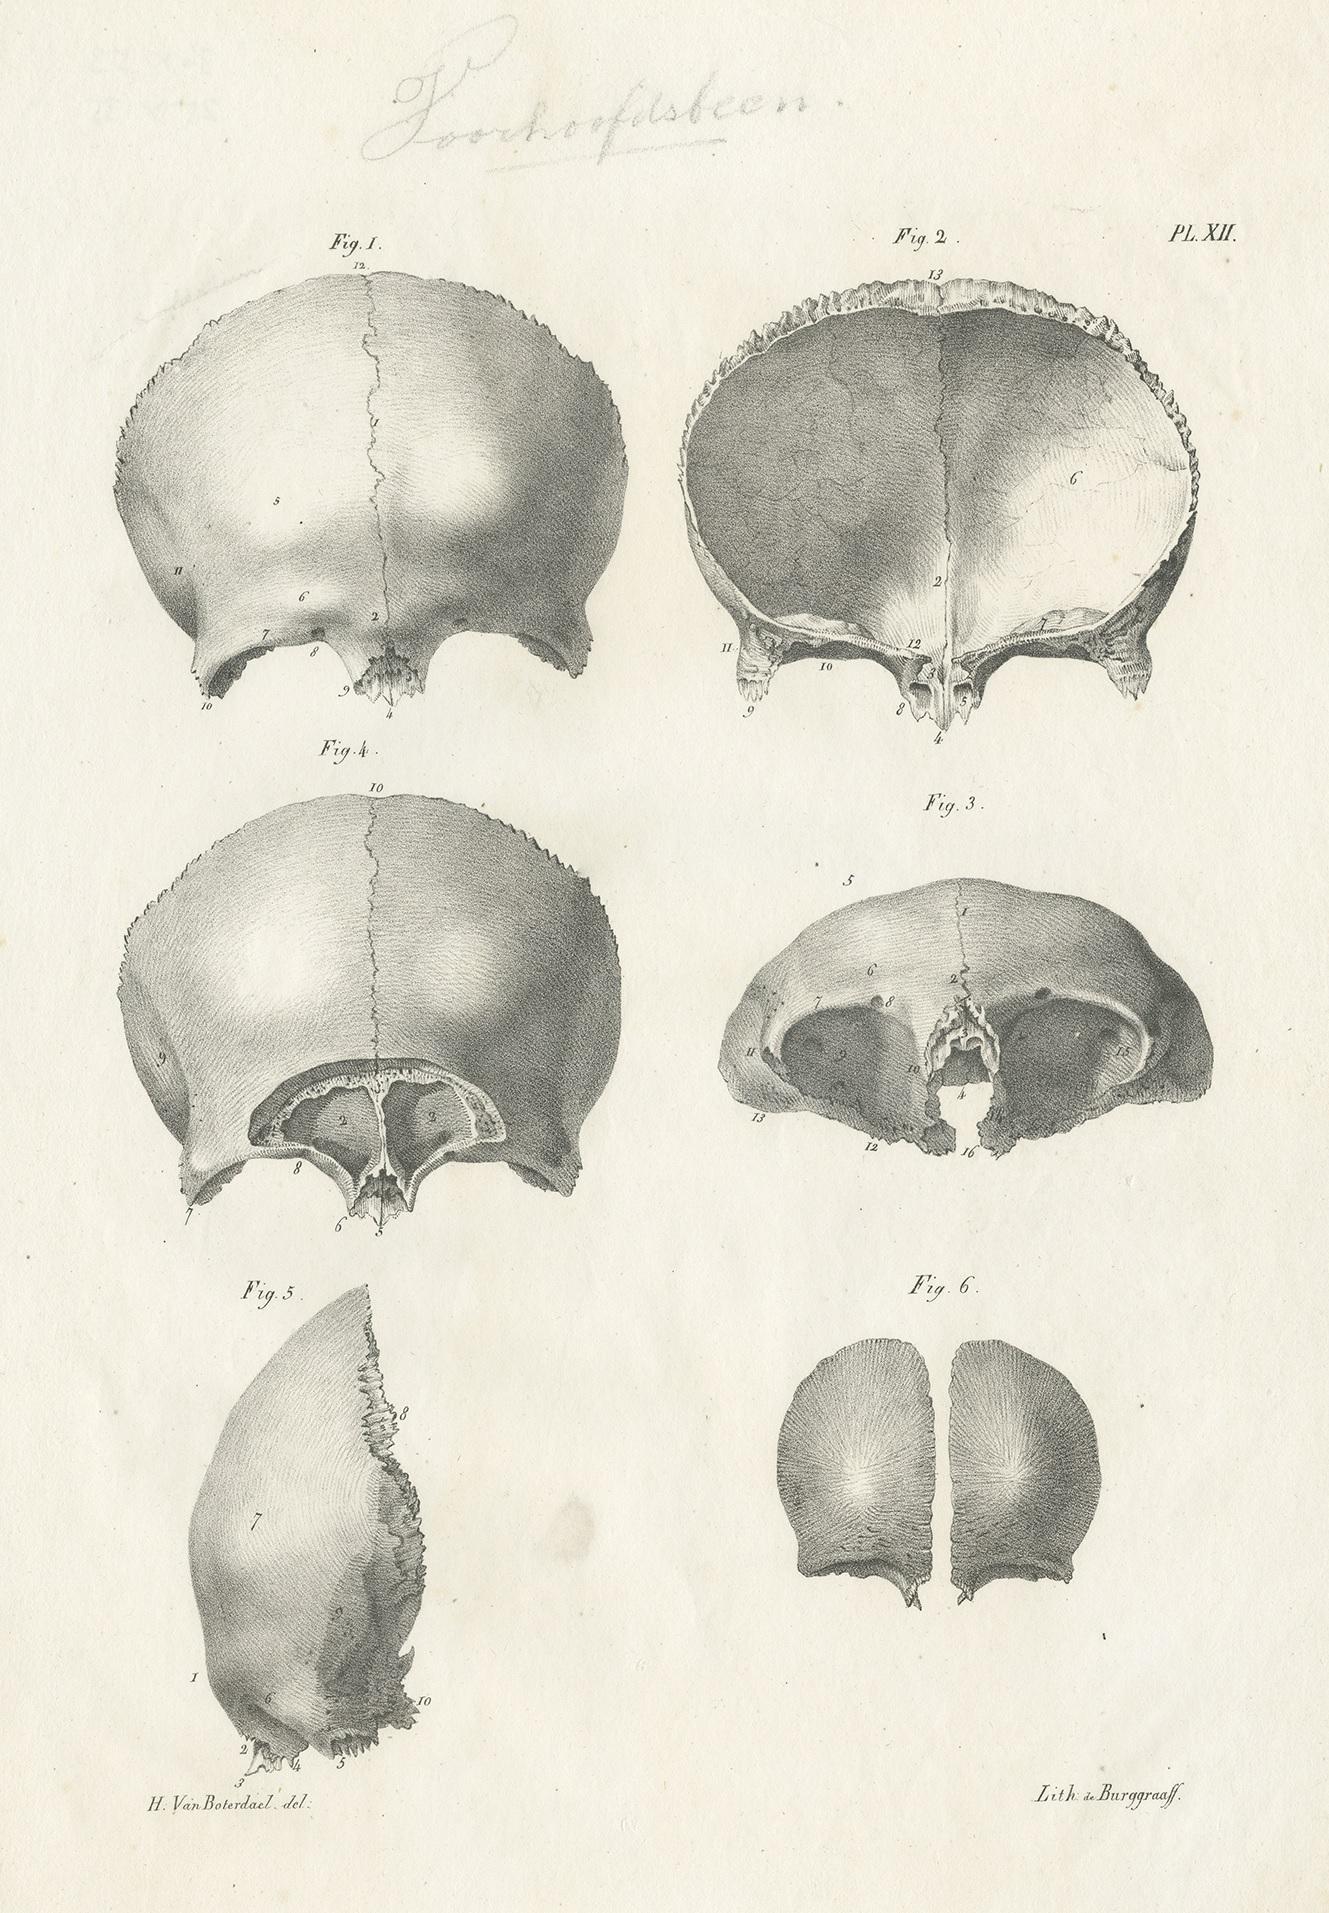 Antique anatomy print showing the skull / cranium. This print originates from 'Anatomie De L'Homme Ou Descriptions Et figures Lithographiees De Toutes Les Parties Du Corps Humain', by Jules Cloquet. This work was published between 1821-1831 and